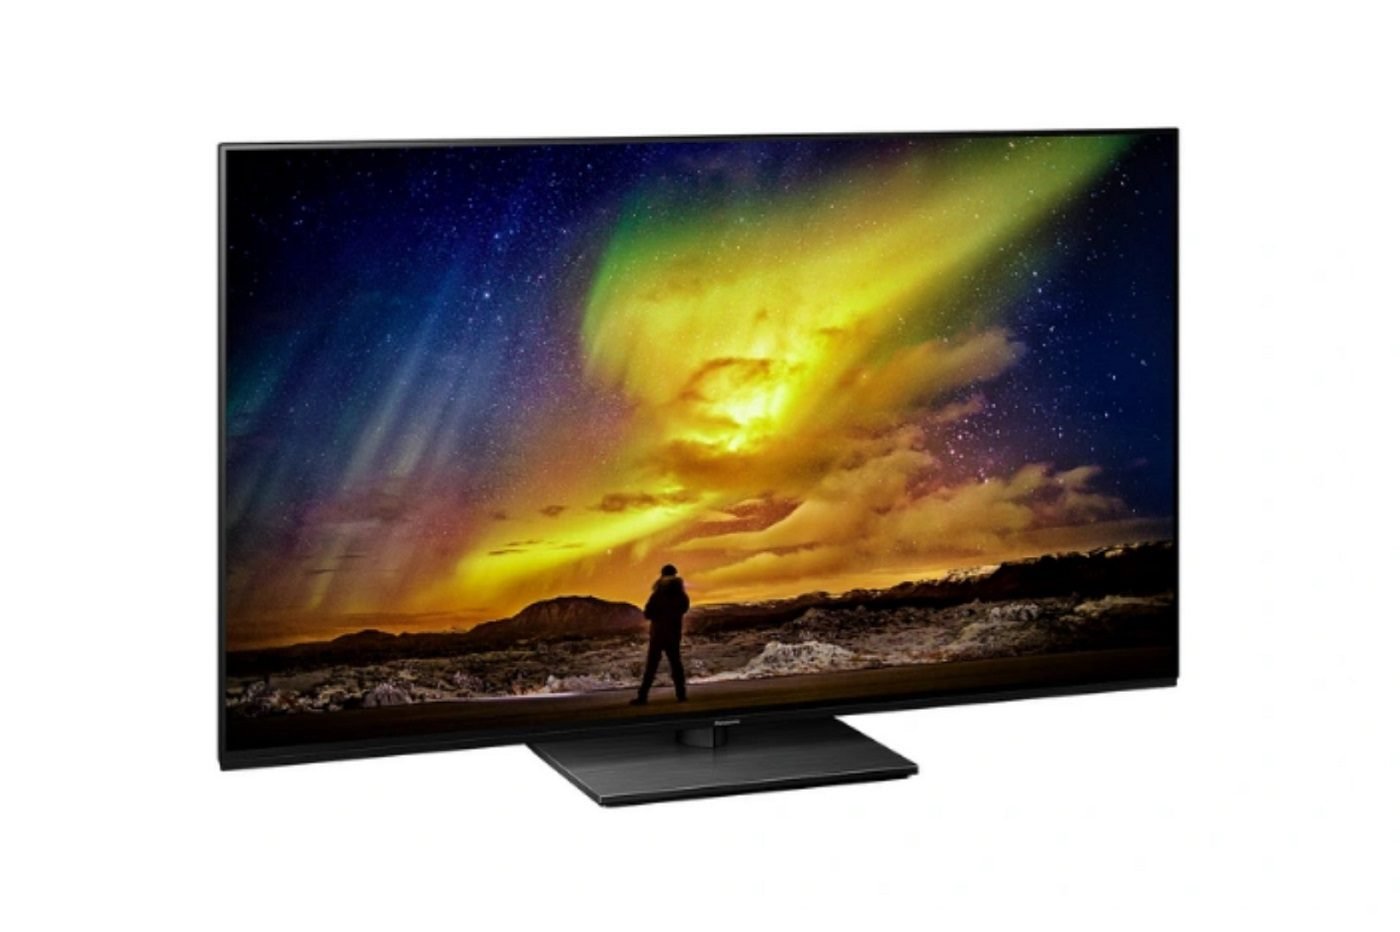 Vous ne rêvez pas, cette TV 4K OLED 55" Panasonic est bien à ce prix magique 🔥